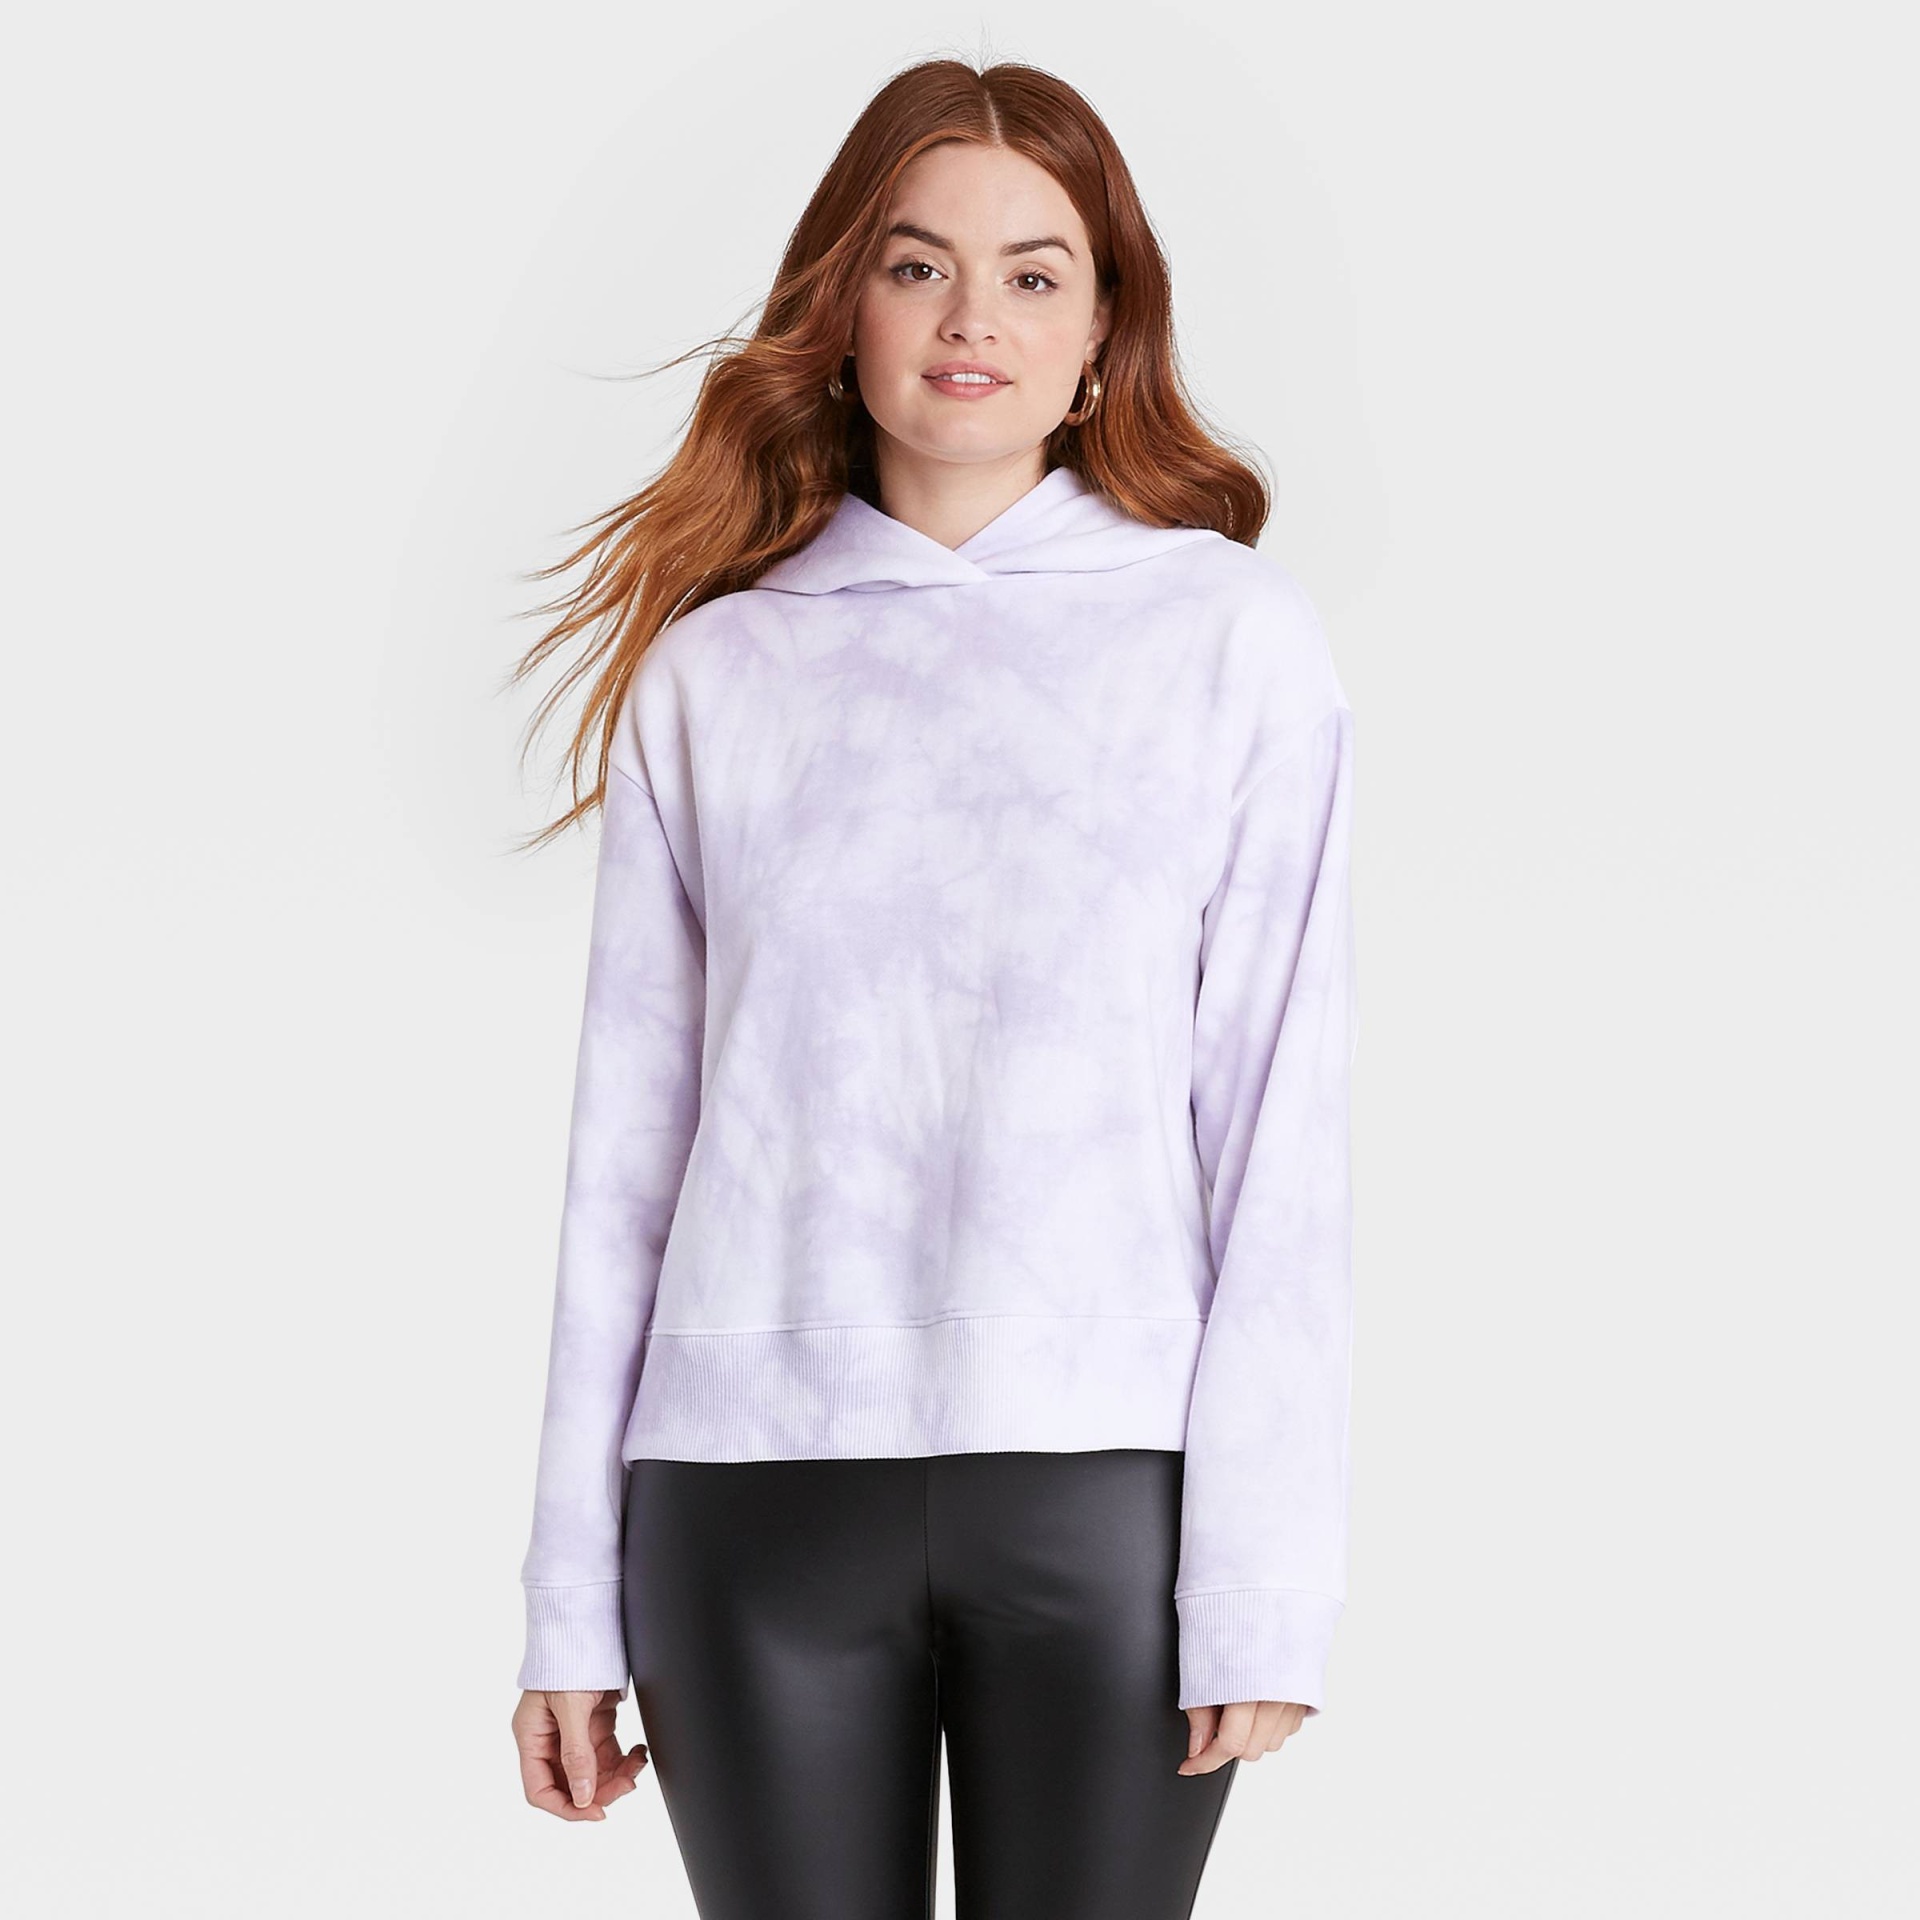 slide 1 of 3, Women's Hooded Sweatshirt - A New Day Light Purple S, 1 ct